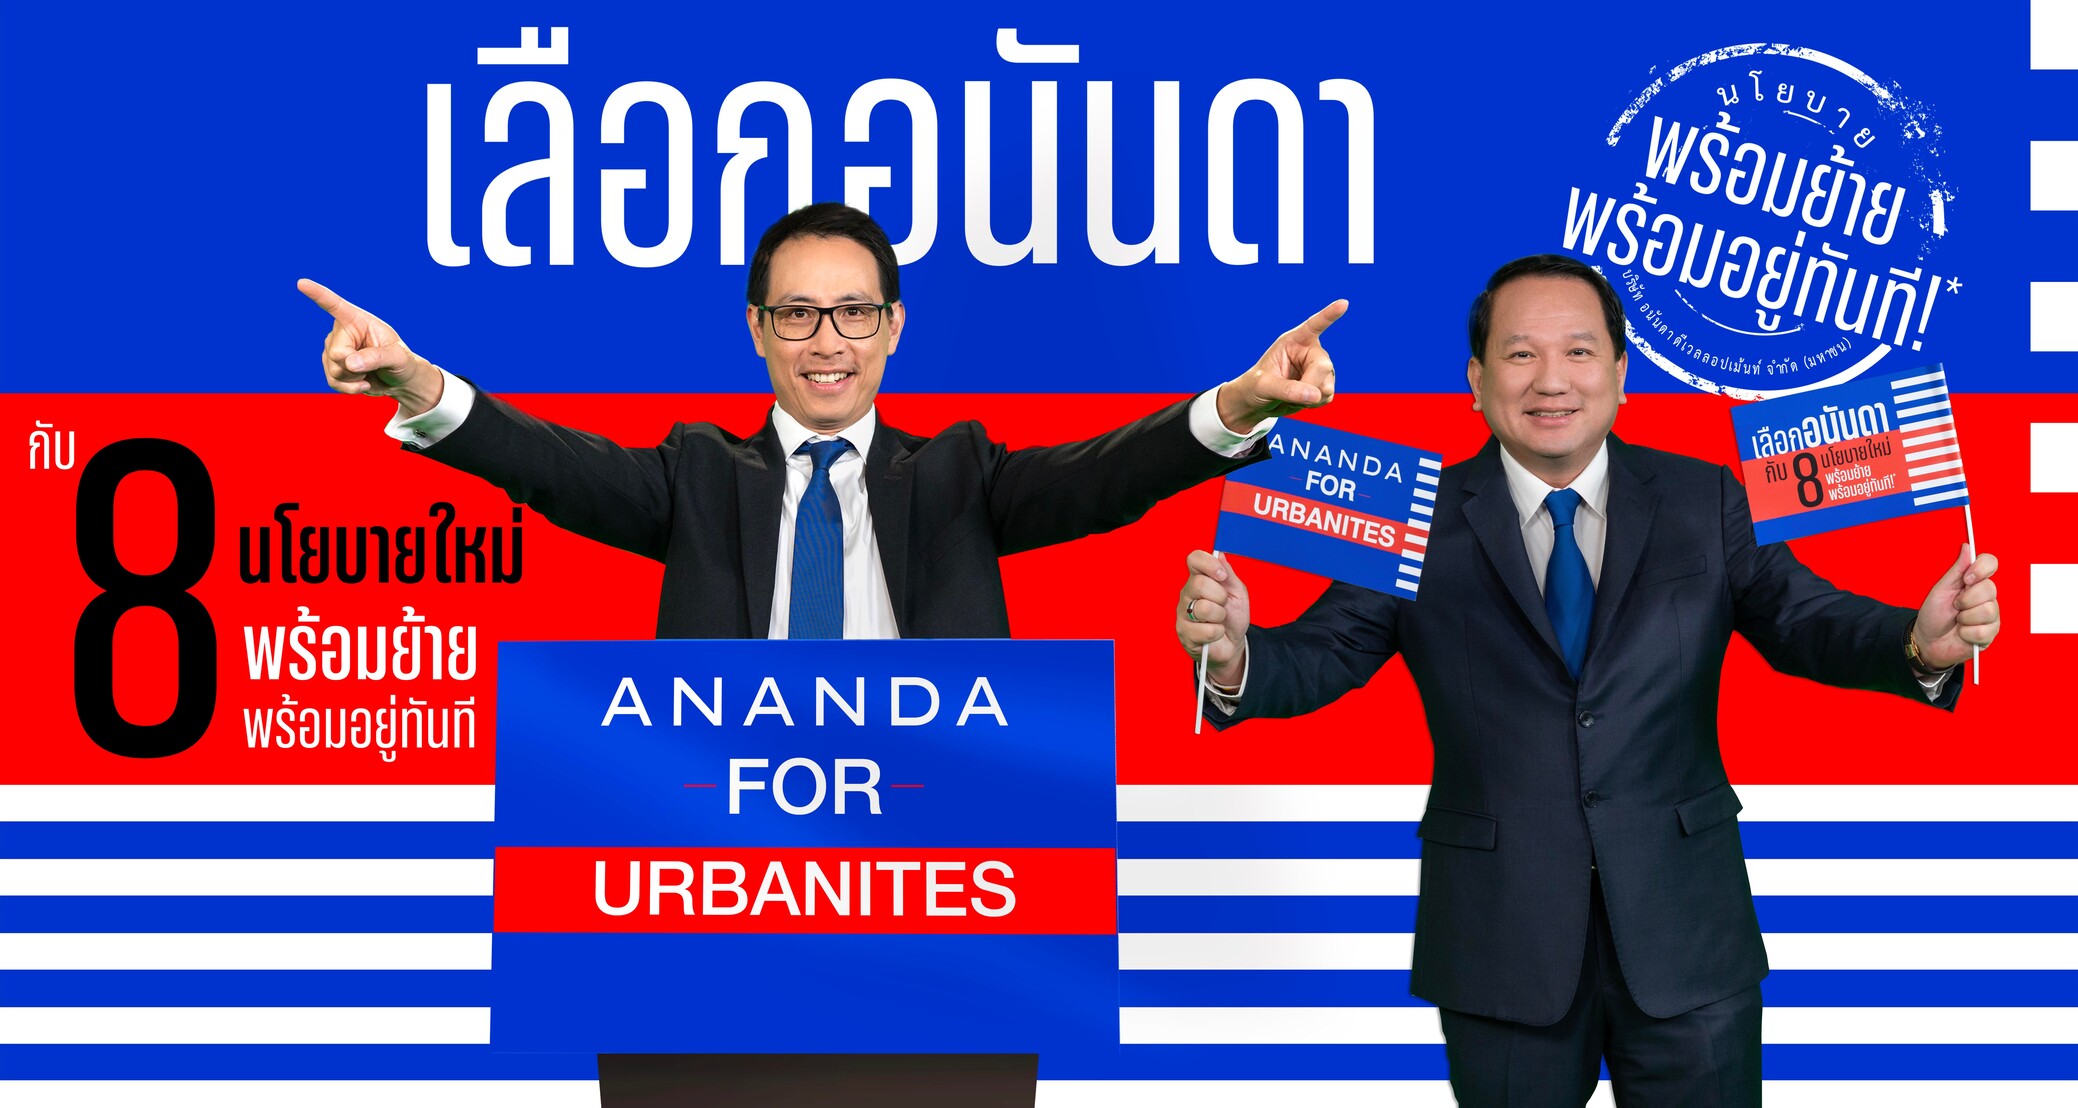 Ananda for Urbanites